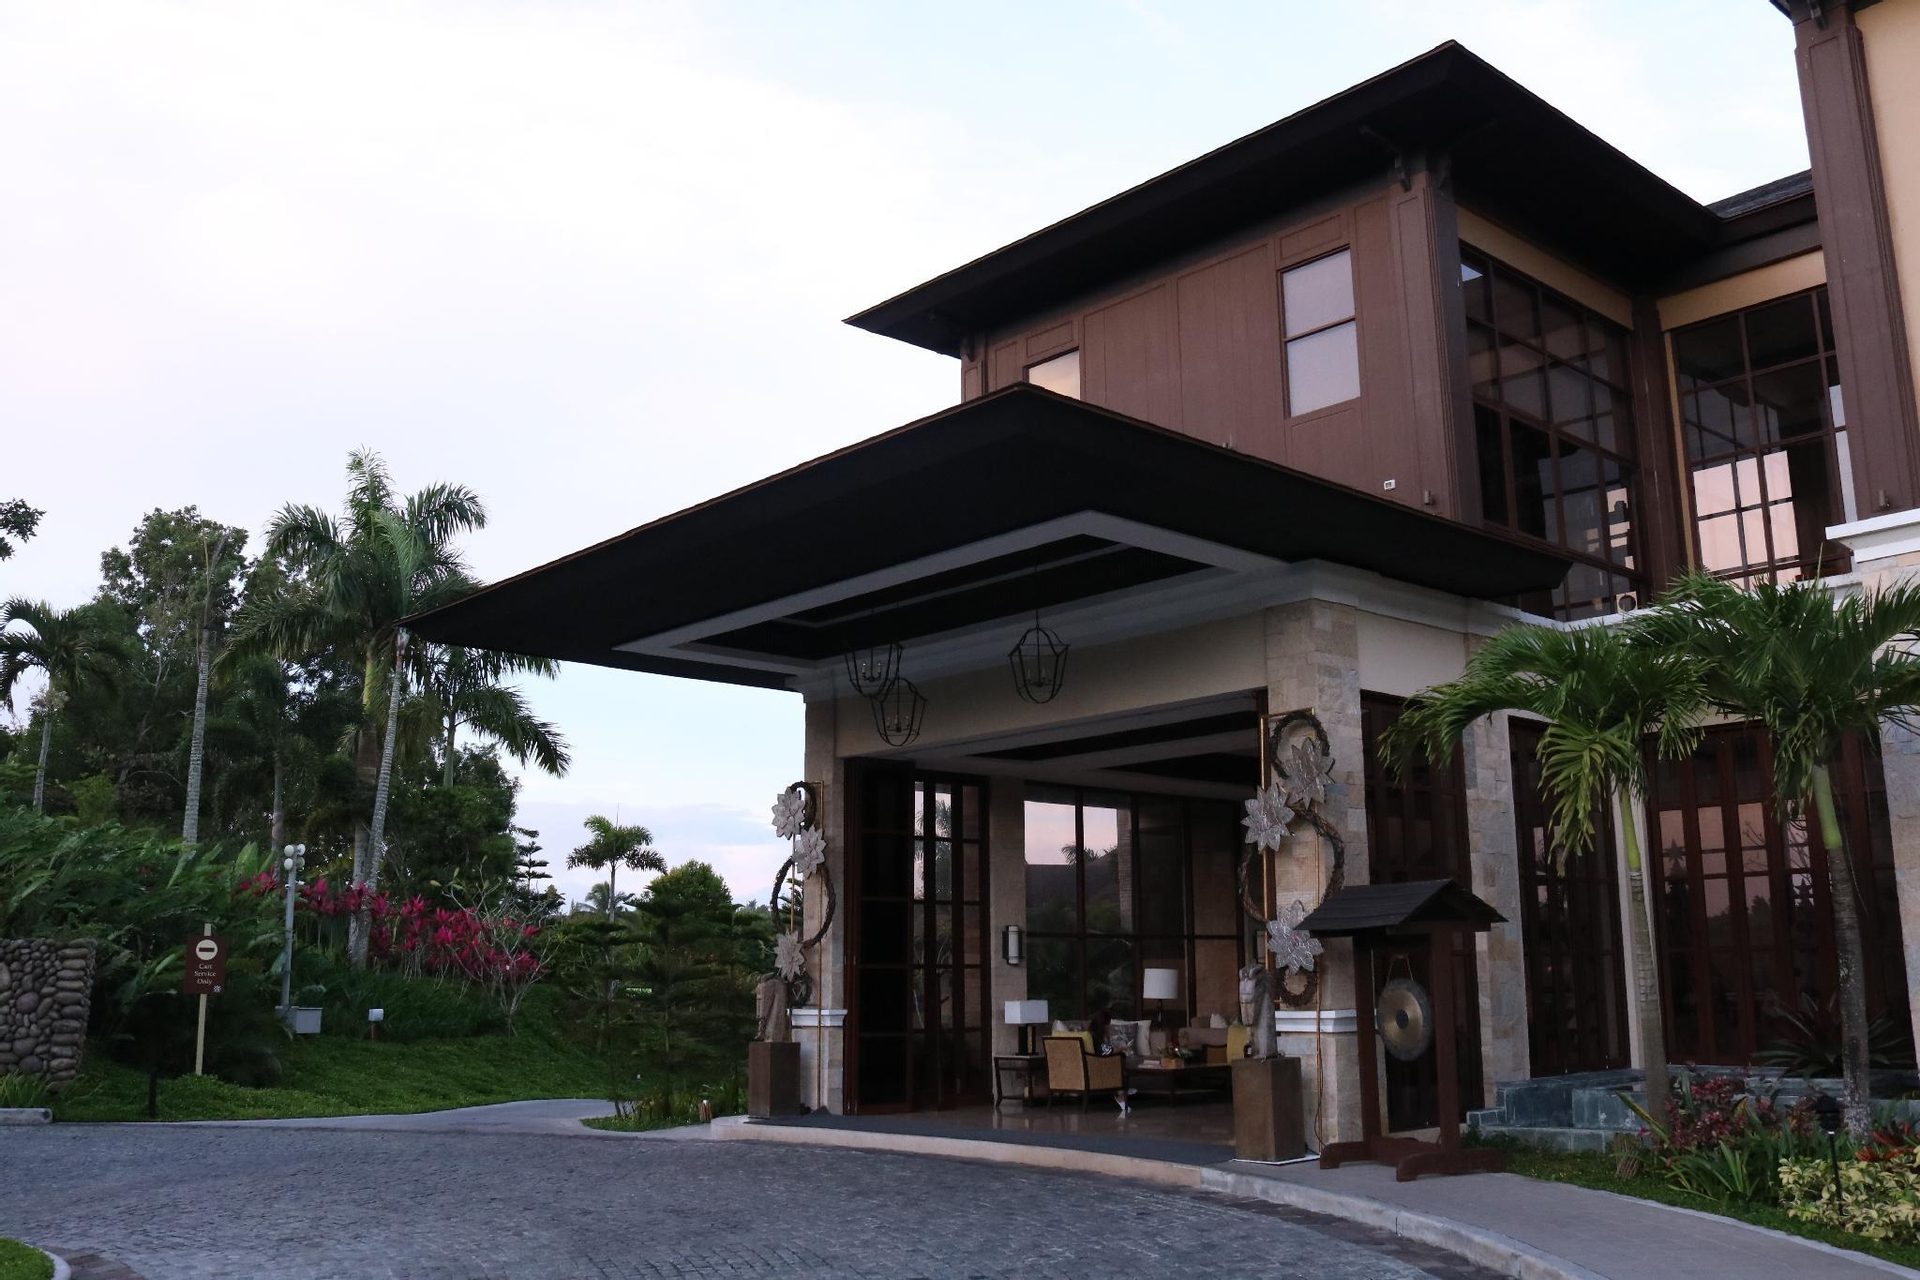 Exterior & Views 1, Anya Resort, Tagaytay City